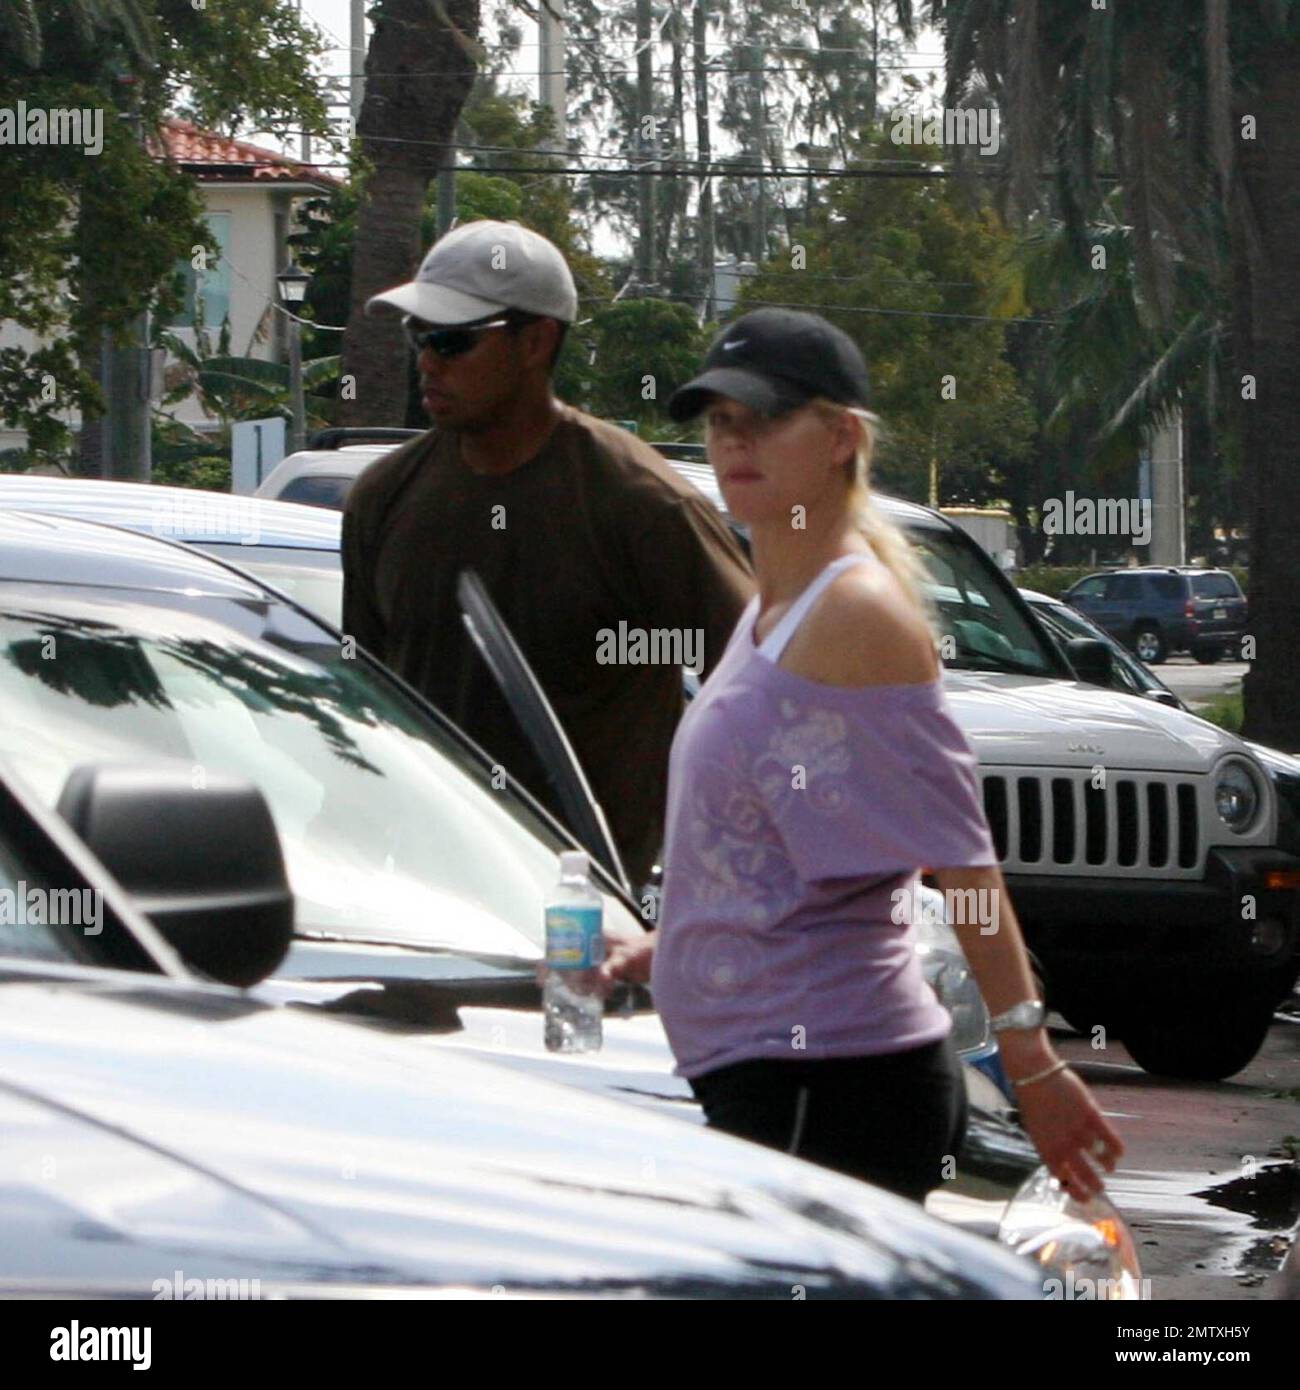 Exclusif !! La superstar du golf Tiger Woods et sa femme Elin font une pause de leur yacht « Privacy » pour aller à une salle de sport locale. Même si Elin est enceinte et montre, elle aime toujours s'entraîner et garder la forme. Miami Beach, FL, 3/25/07 Banque D'Images